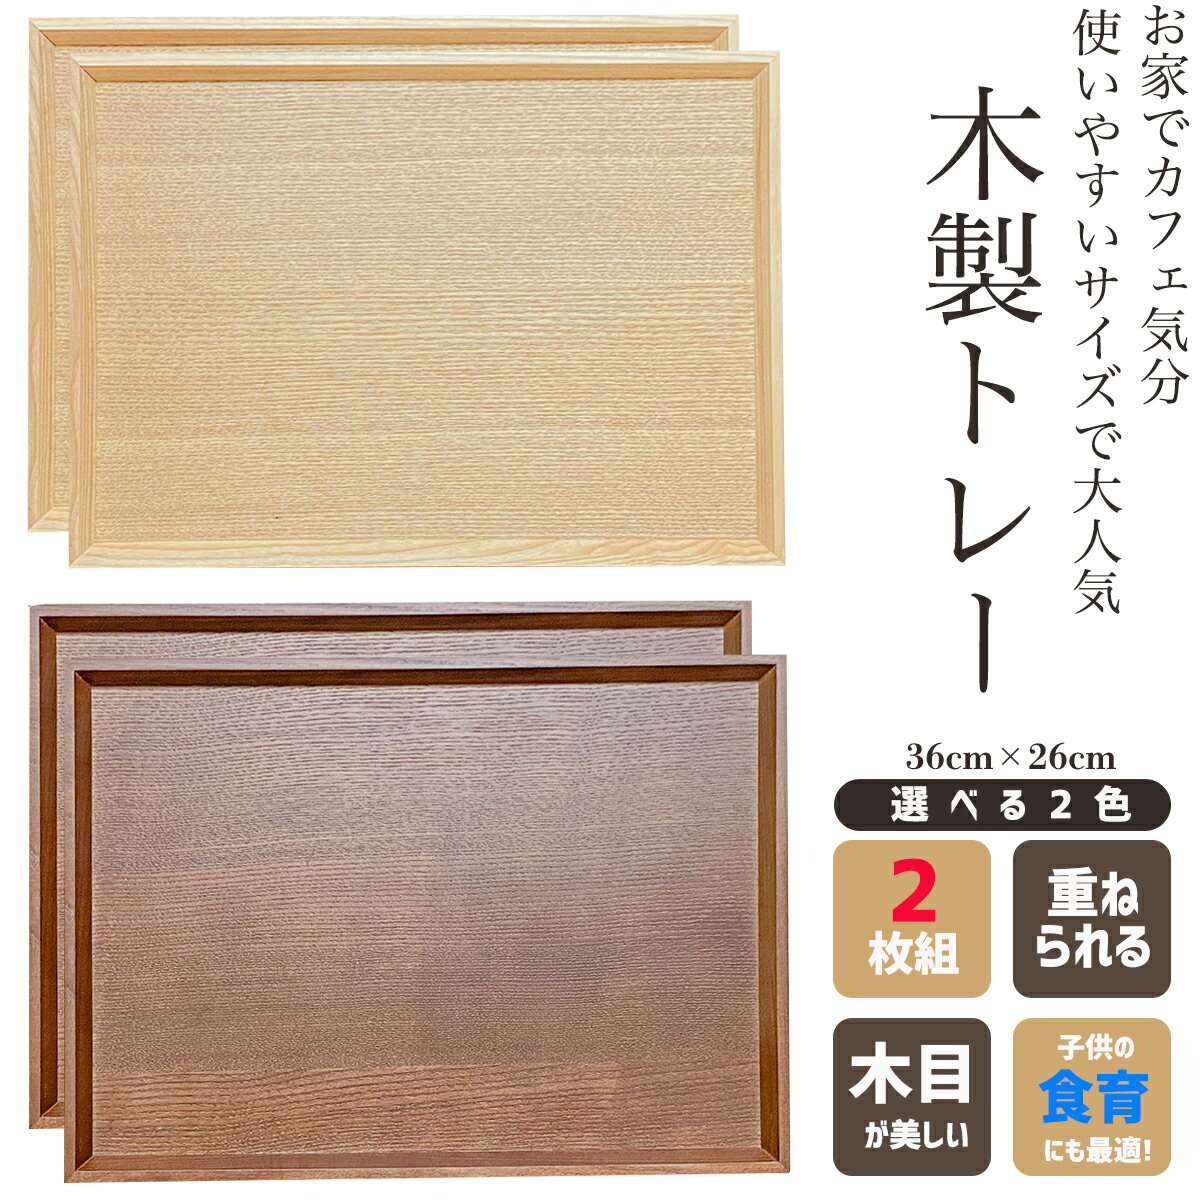 【大特価】木製トレー 2枚セット ペ